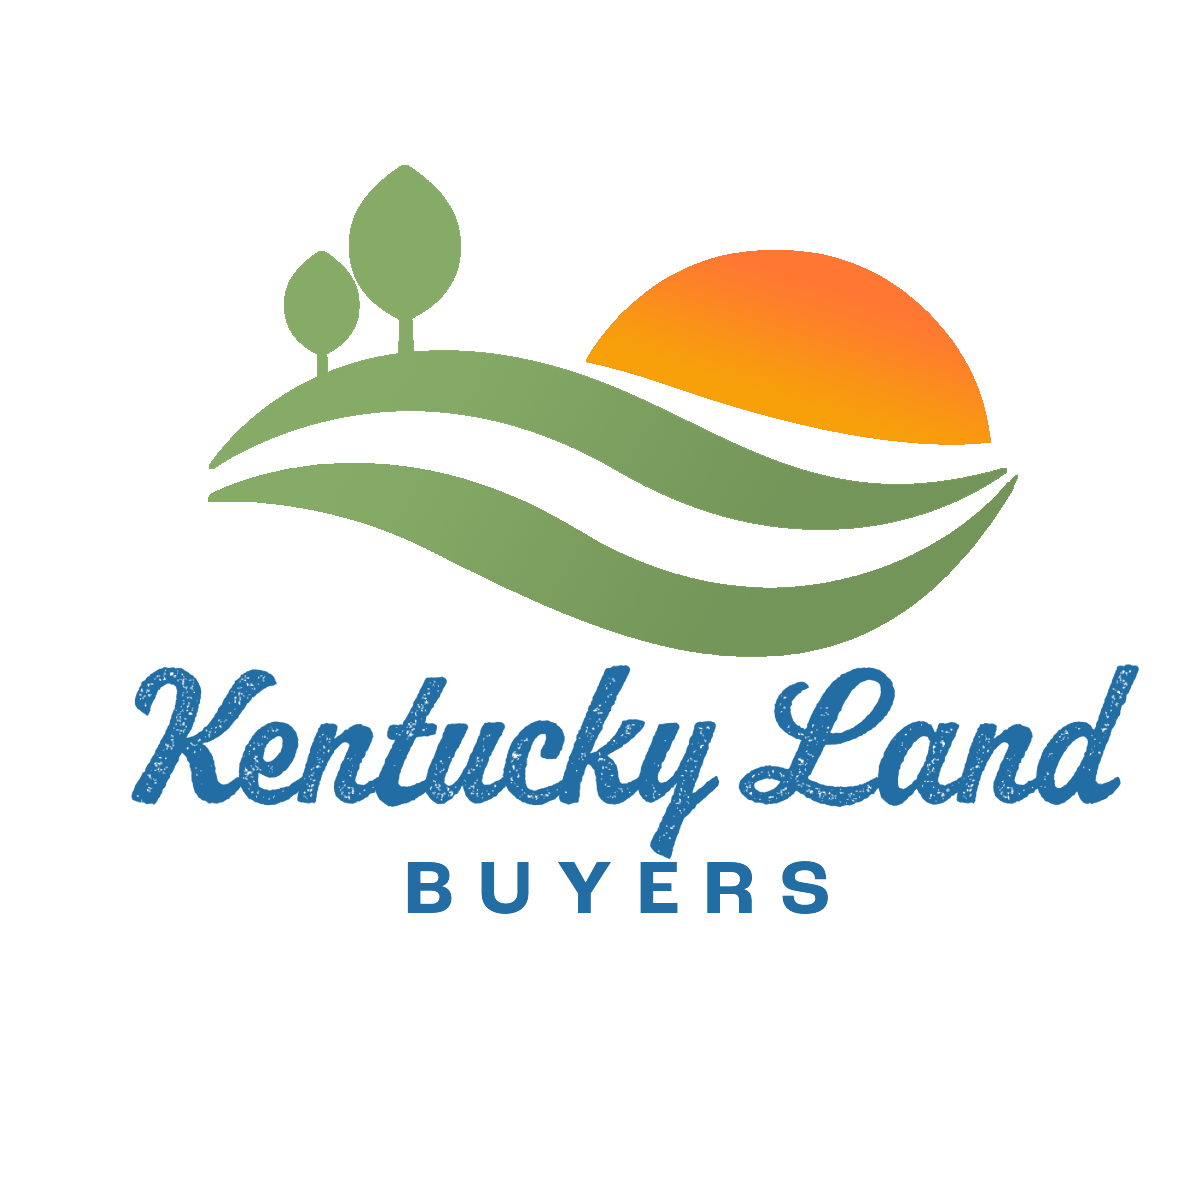 Kentucky Land Buyers logo